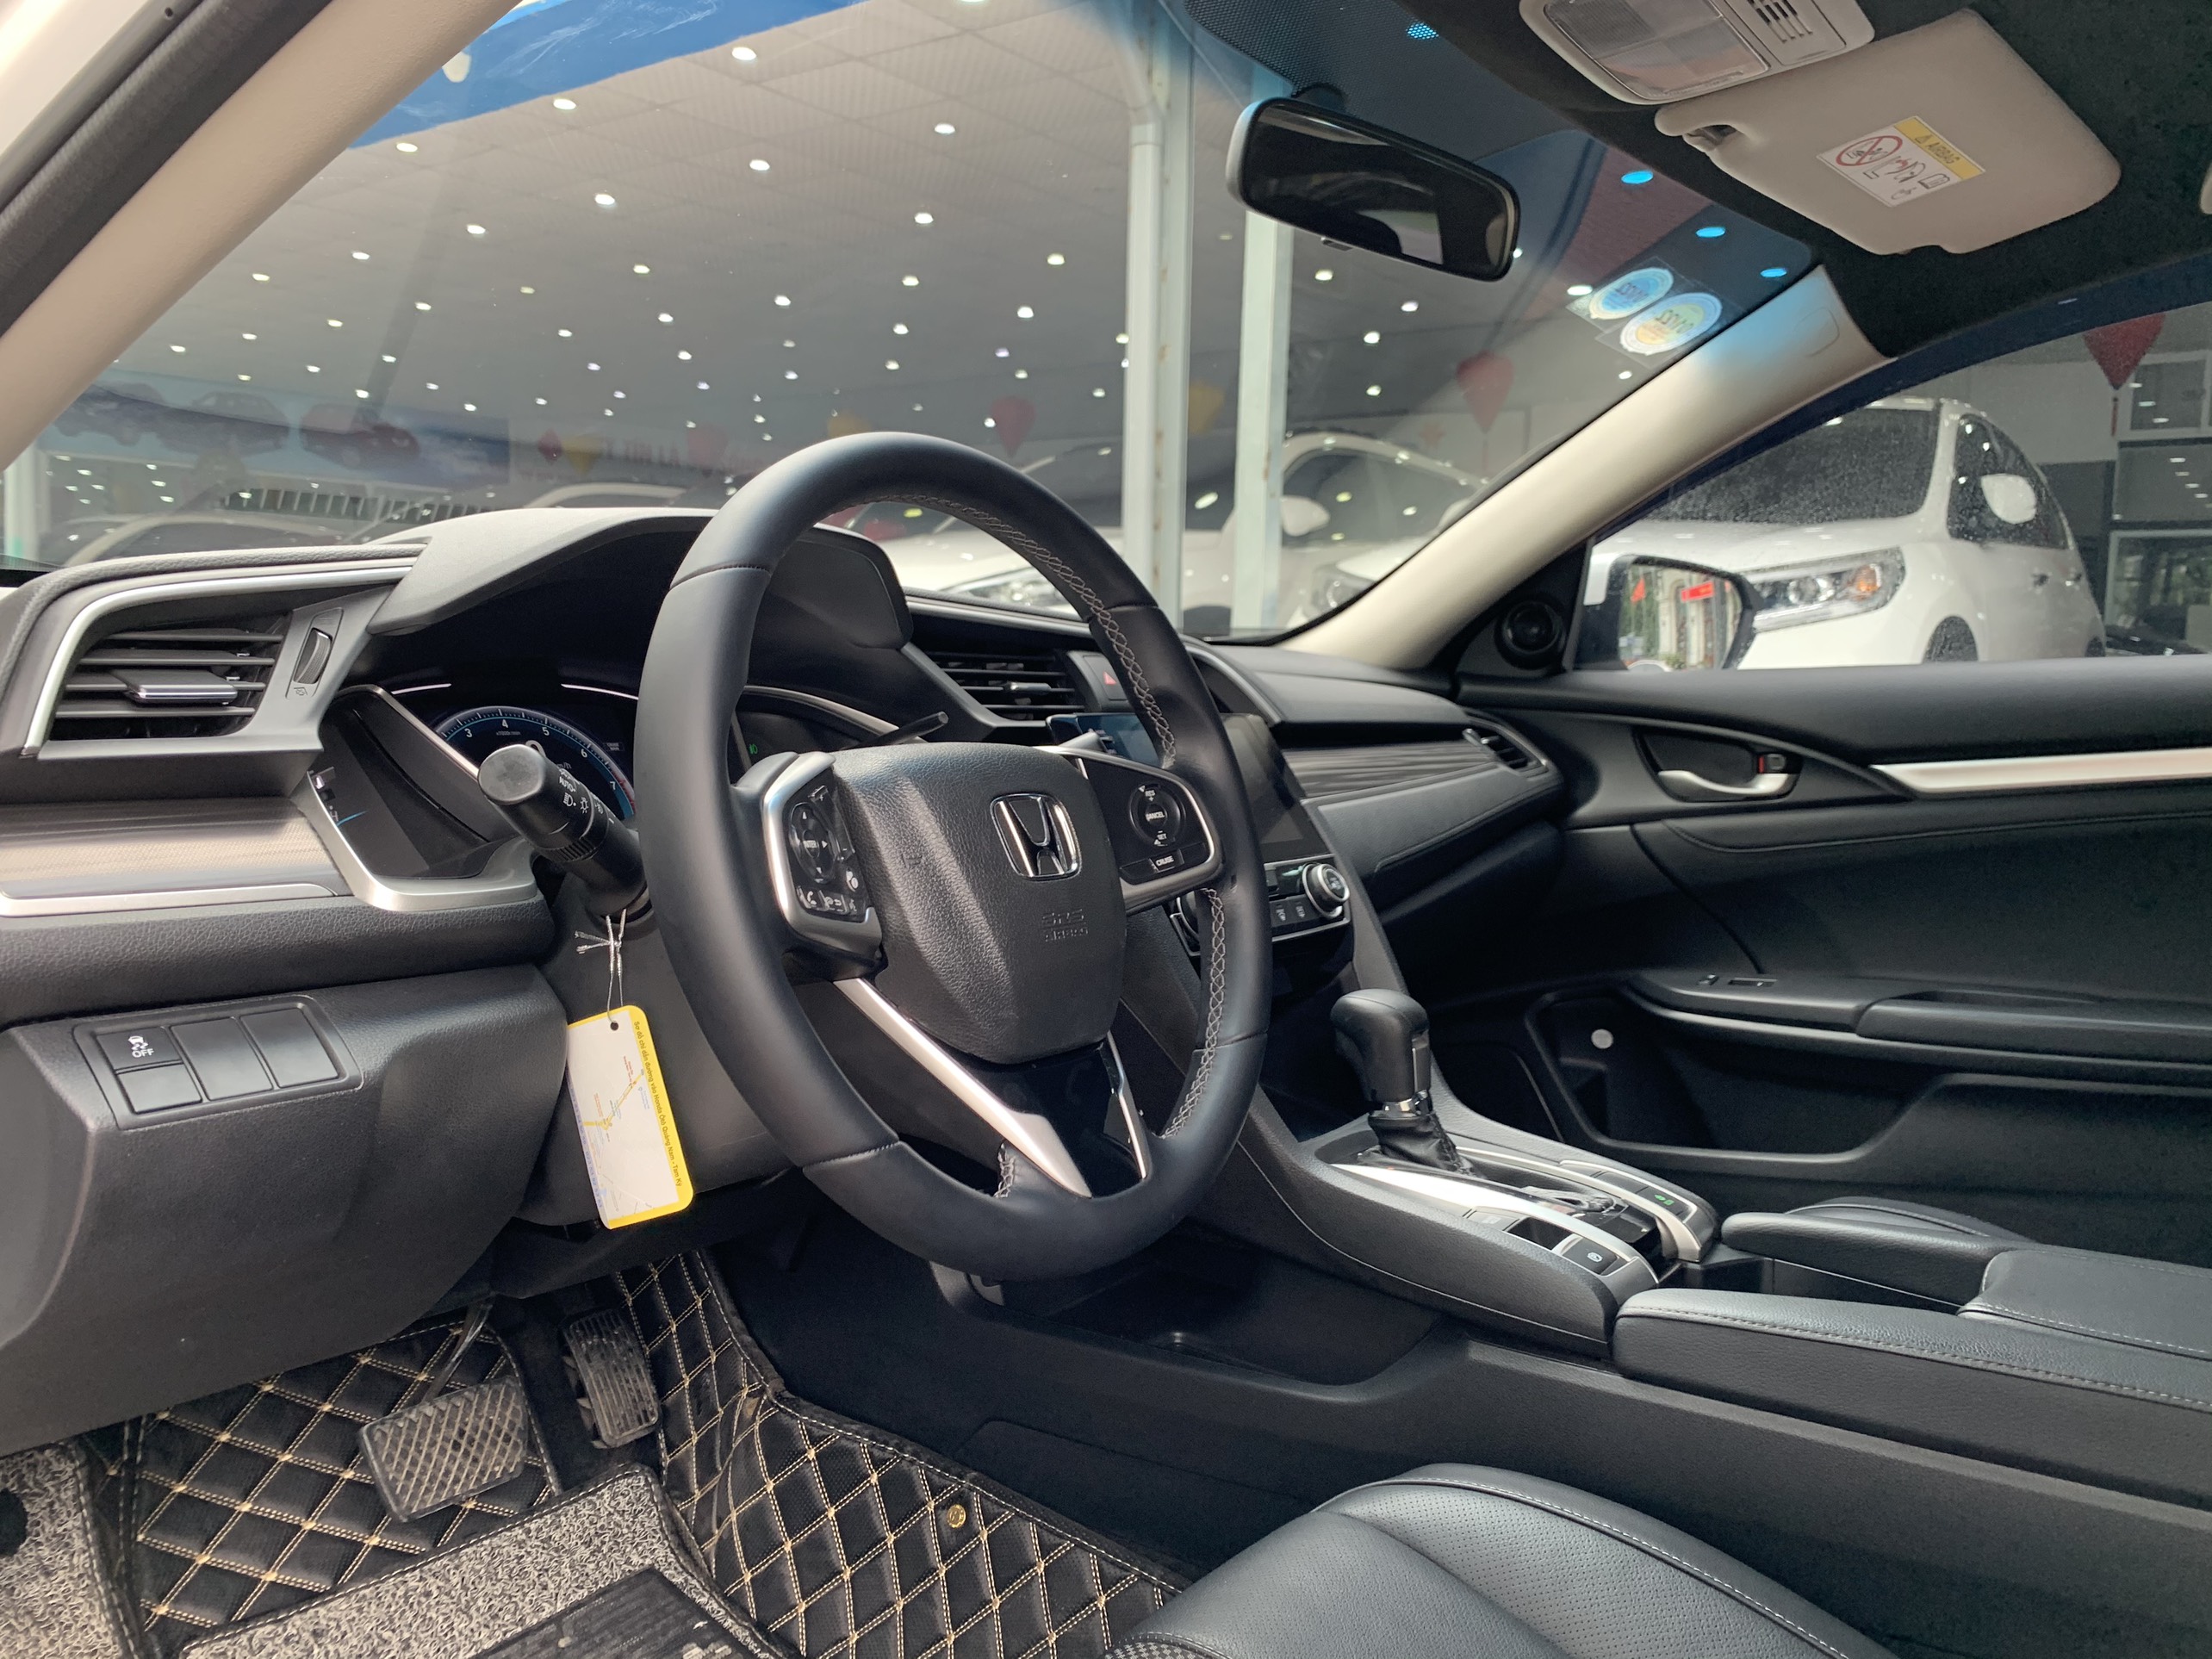 Honda Civic 1.8G 2019 - 7